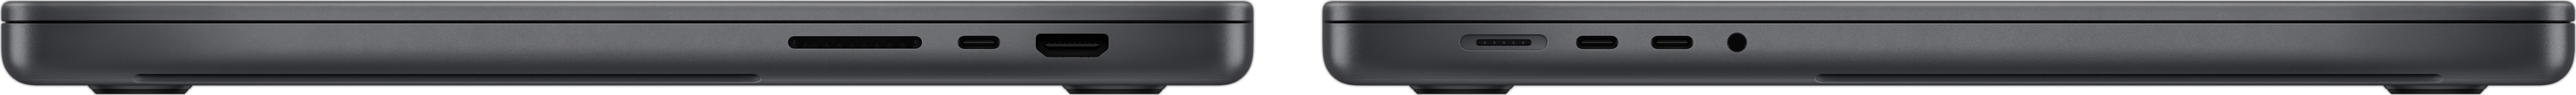 Zijaanzicht van MacBook Pro, waarop de SDXC-kaartsleuf, drie Thunderbolt 4-poorten, de HDMI-poort, de MagSafe 3-oplaadpoort en de mini-jack-aansluiting te zien zijn.